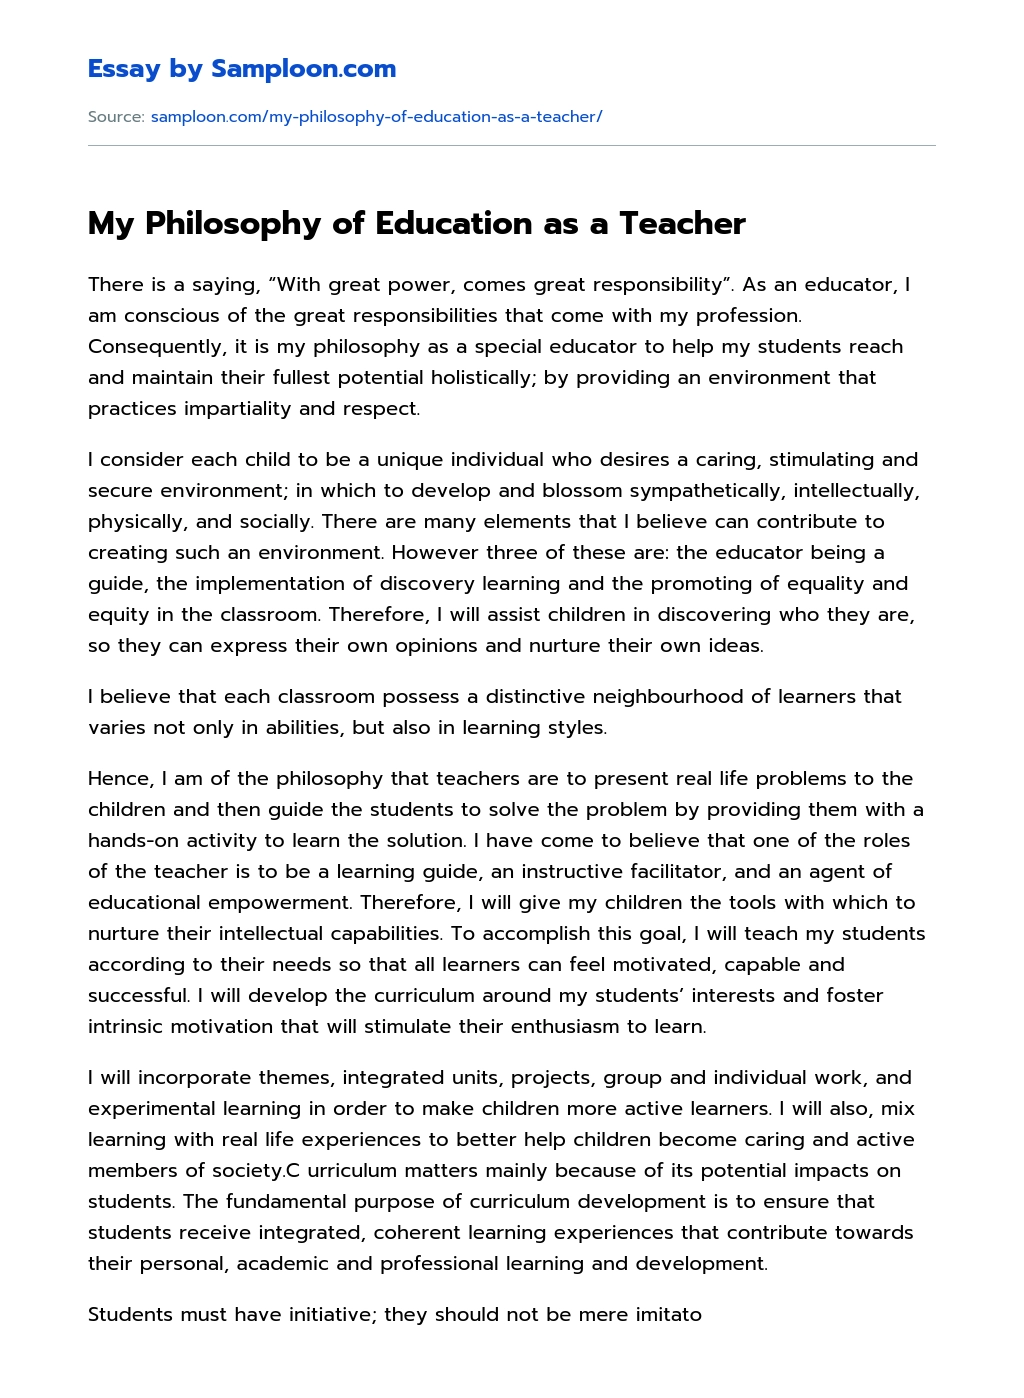 My Philosophy of Education as a Teacher essay